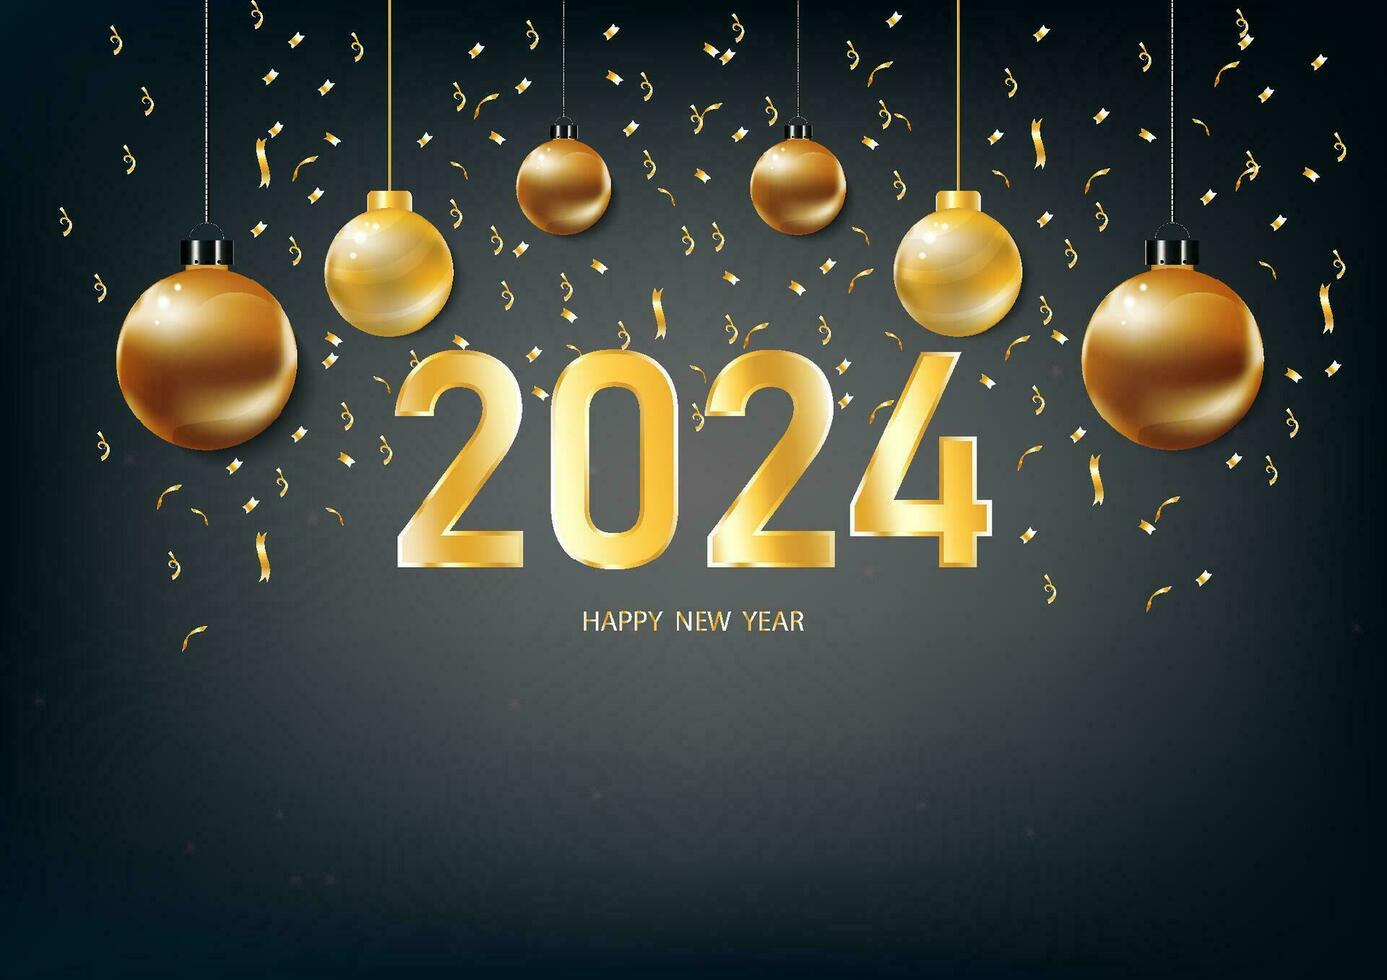 contento nuovo anno 2024. con d'oro numeri d'oro Natale decorazioni e coriandoli su nero blu sfondo vettore